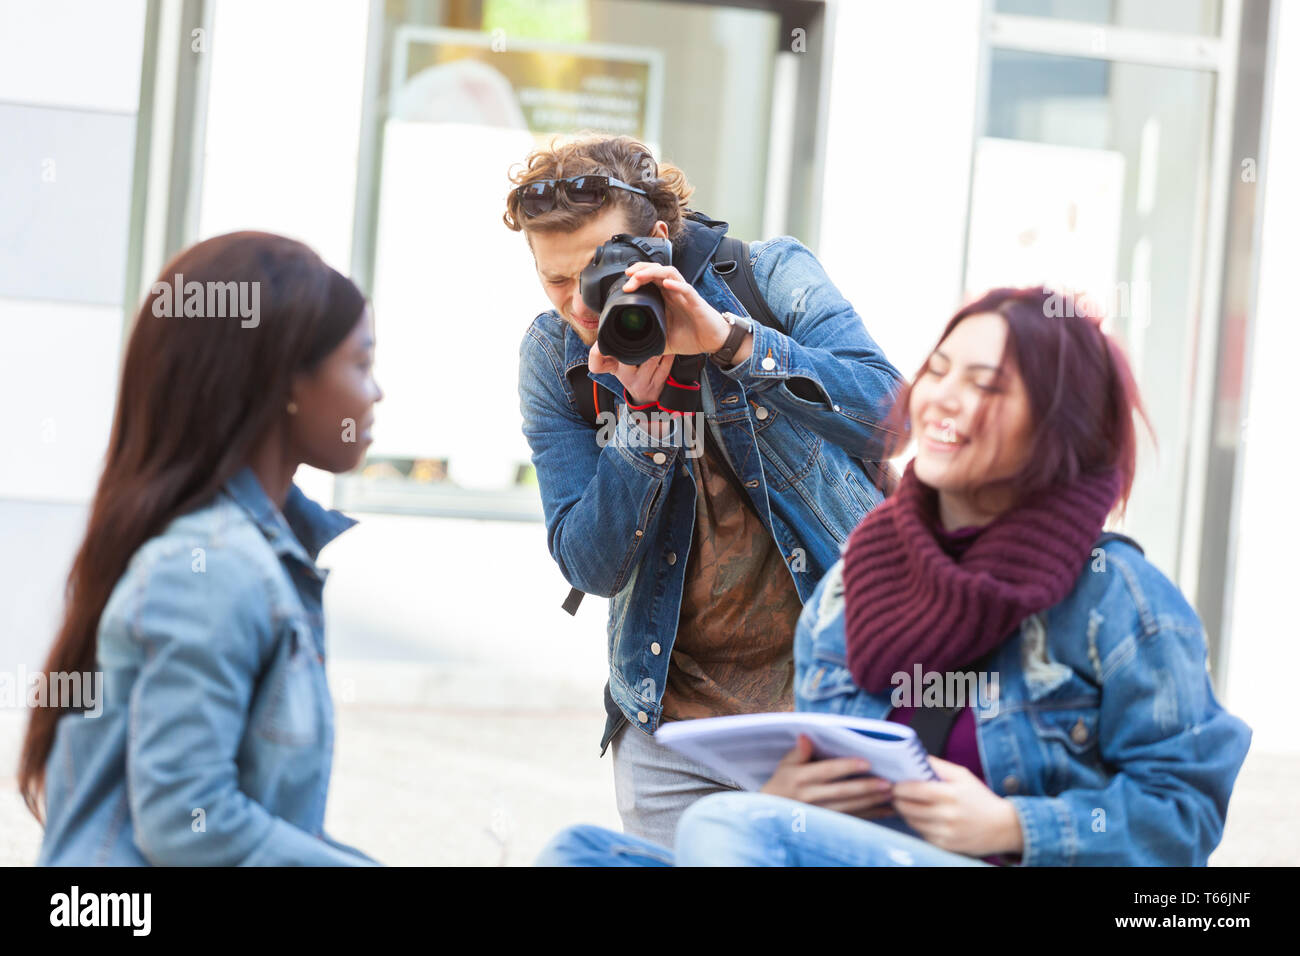 Junge Fotografen Fotografieren von zwei Mädchen beim Studieren. Stock Fotografie Konzept. Stockfoto